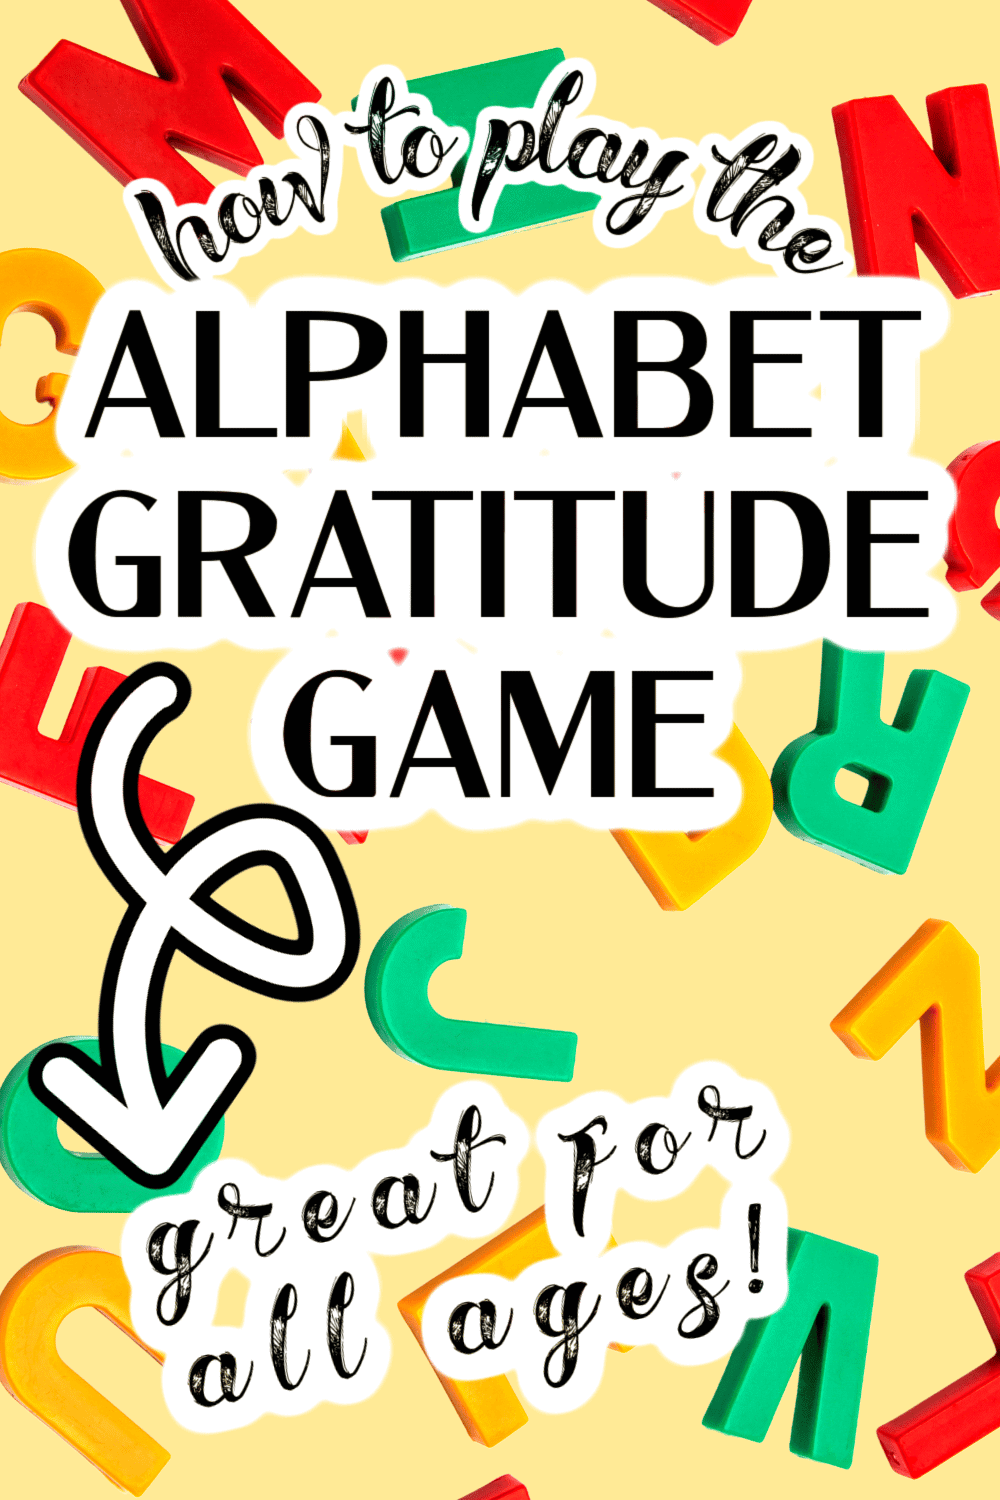 How To Play The Alphabet Gratitude Game